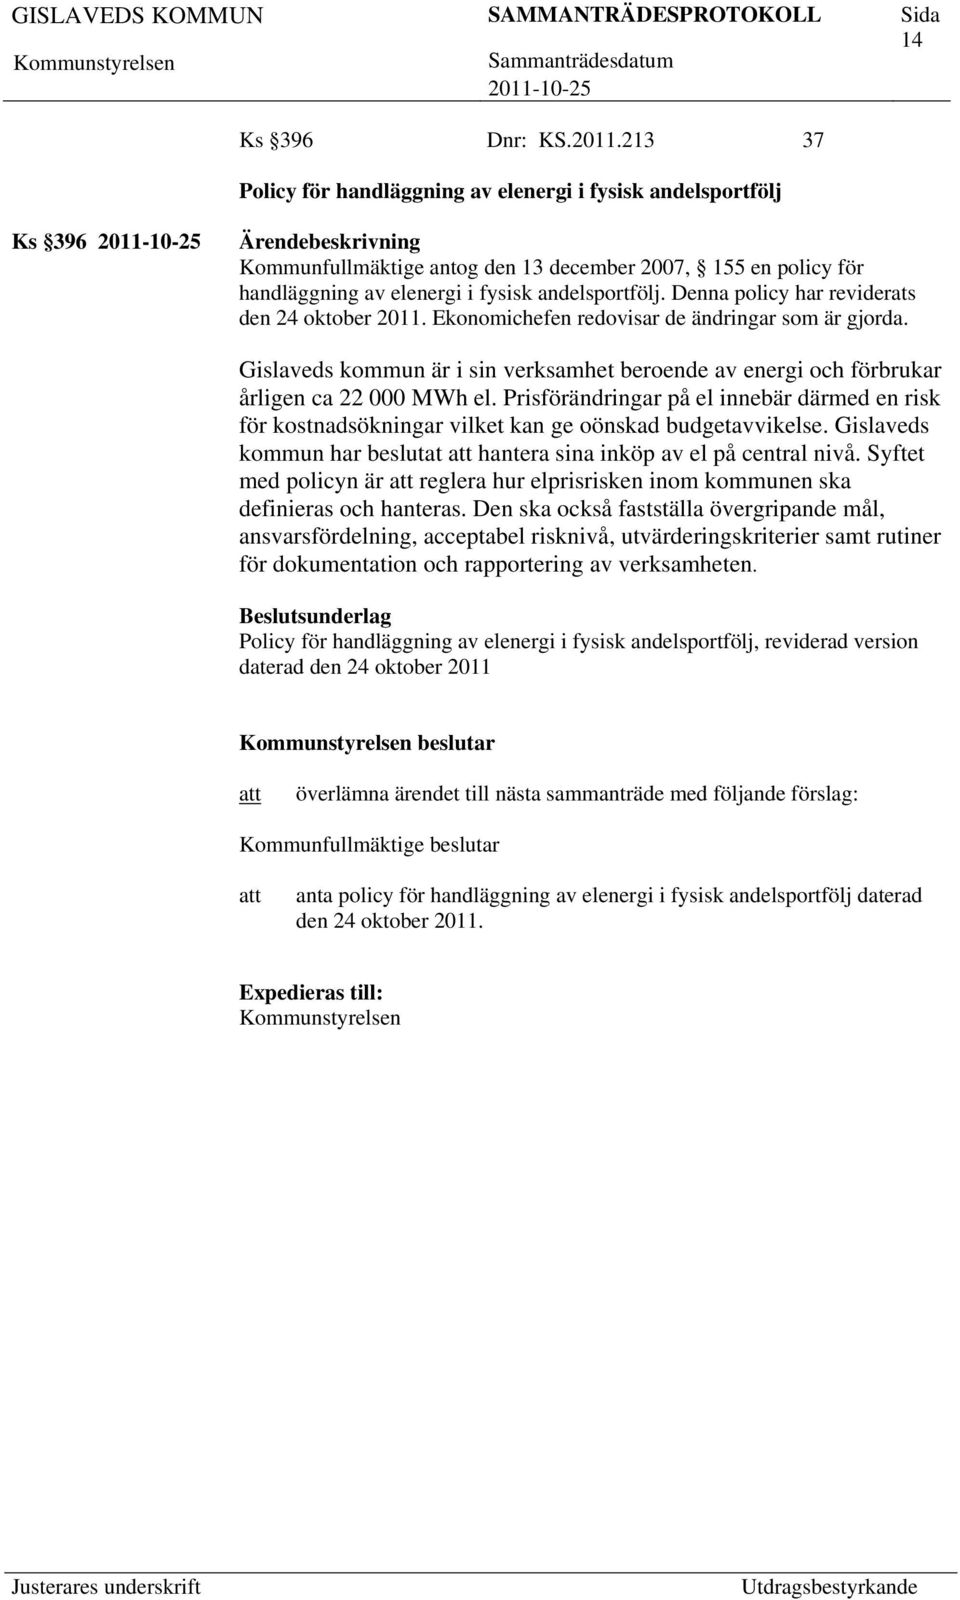 Denna policy har reviderats den 24 oktober 2011. Ekonomichefen redovisar de ändringar som är gjorda. Gislaveds kommun är i sin verksamhet beroende av energi och förbrukar årligen ca 22 000 MWh el.